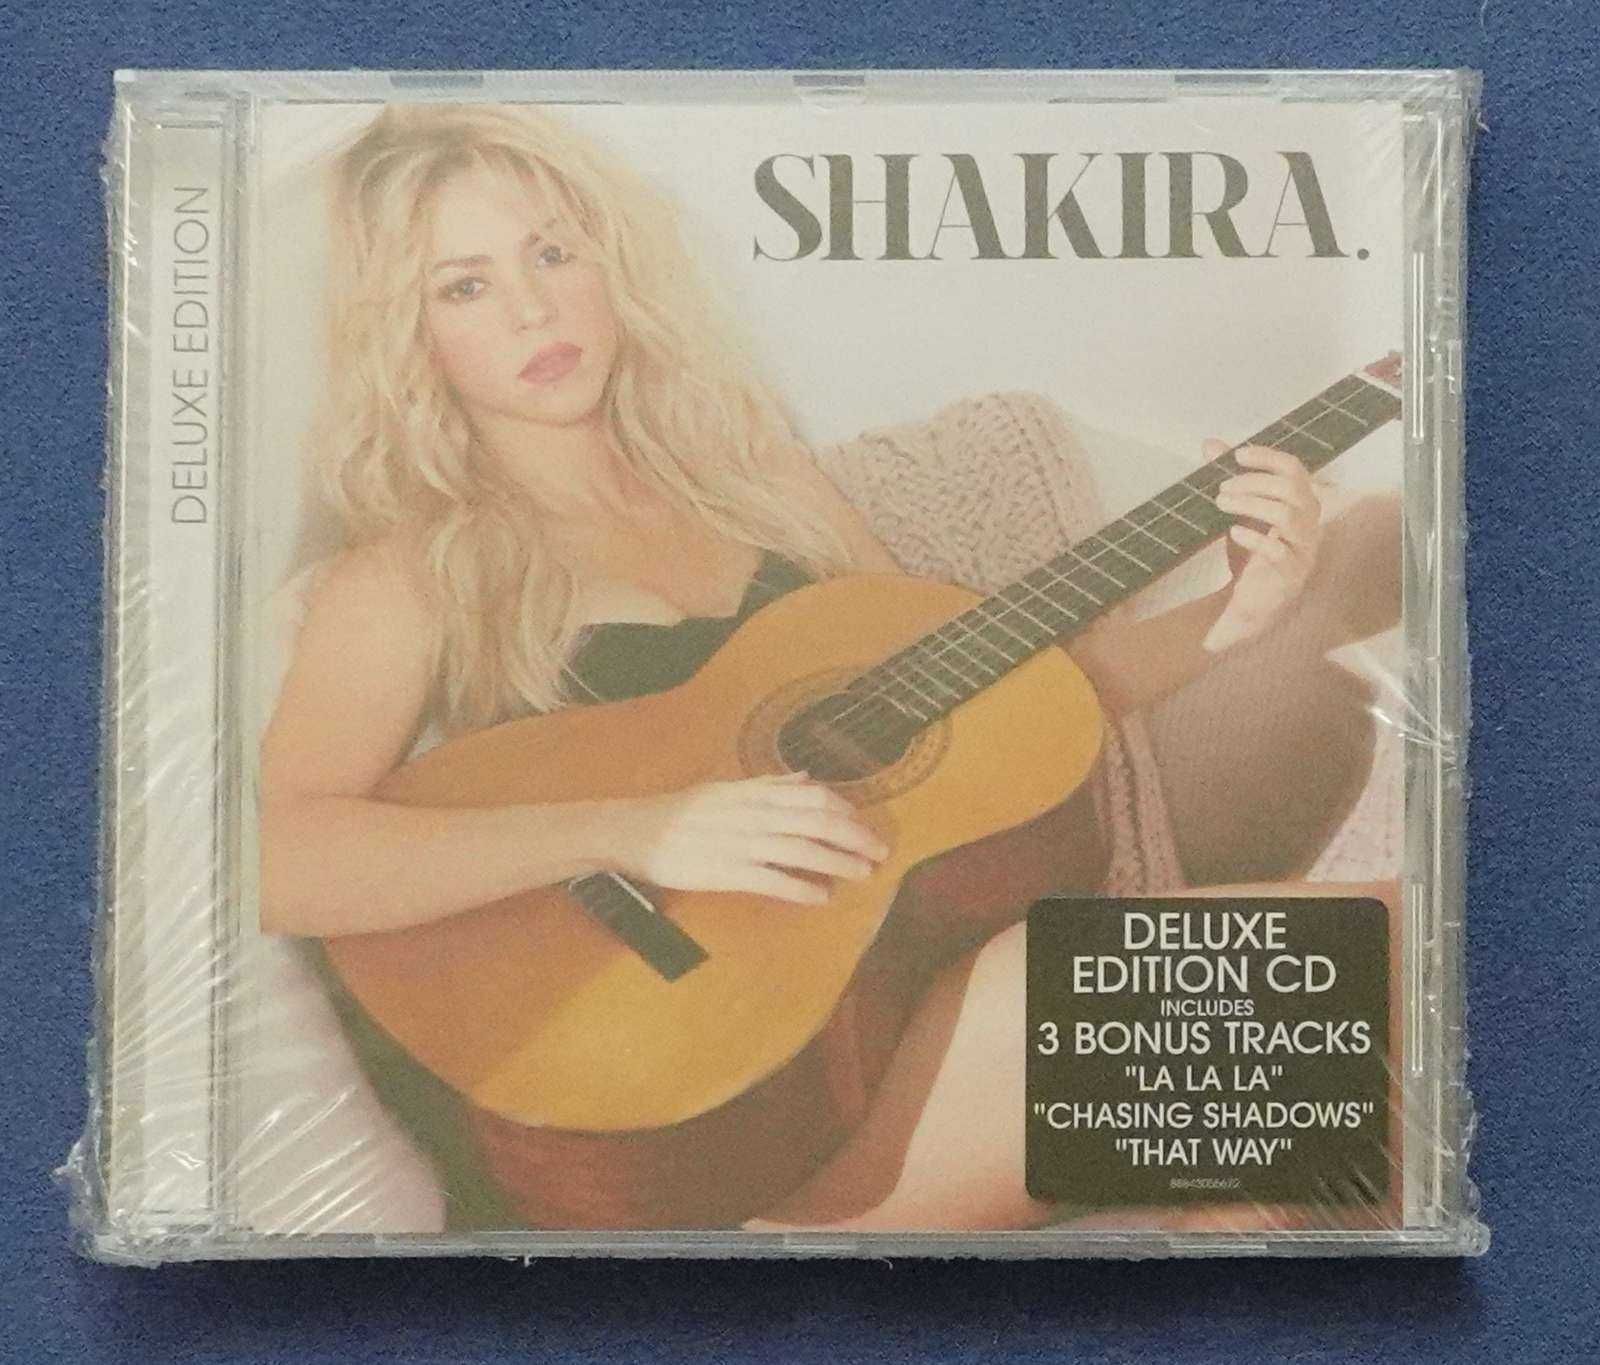 płyta CD - Shakira - Shakira, nowa, w folii